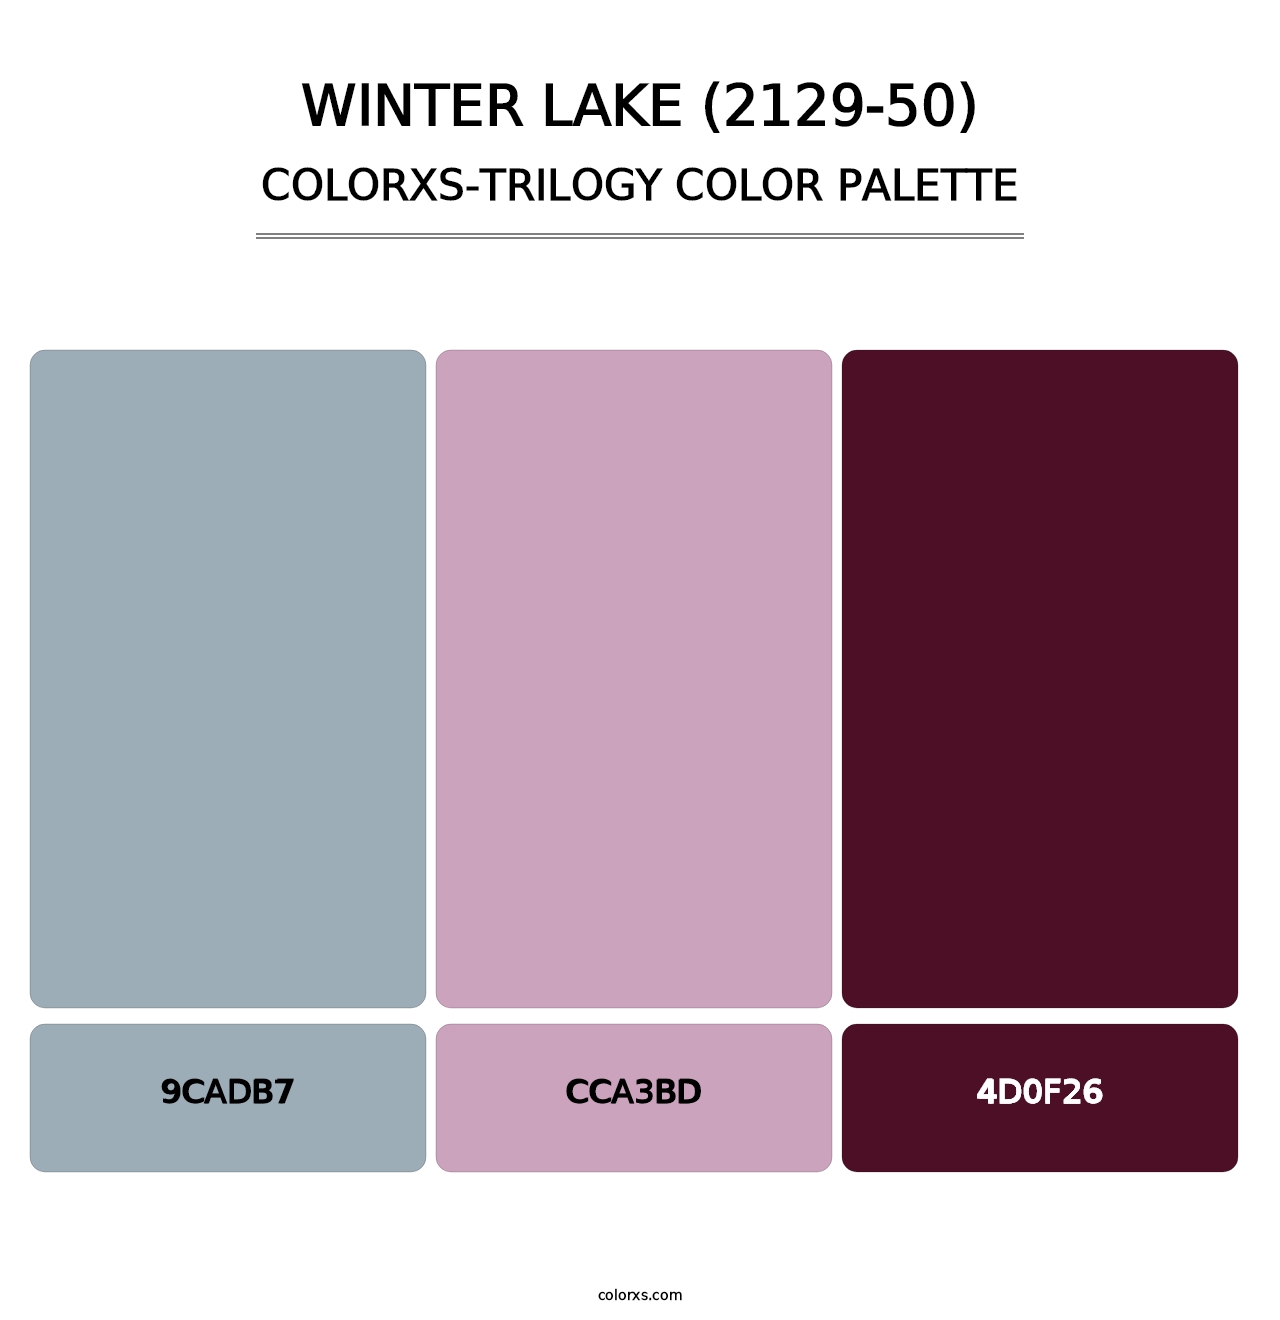 Winter Lake (2129-50) - Colorxs Trilogy Palette